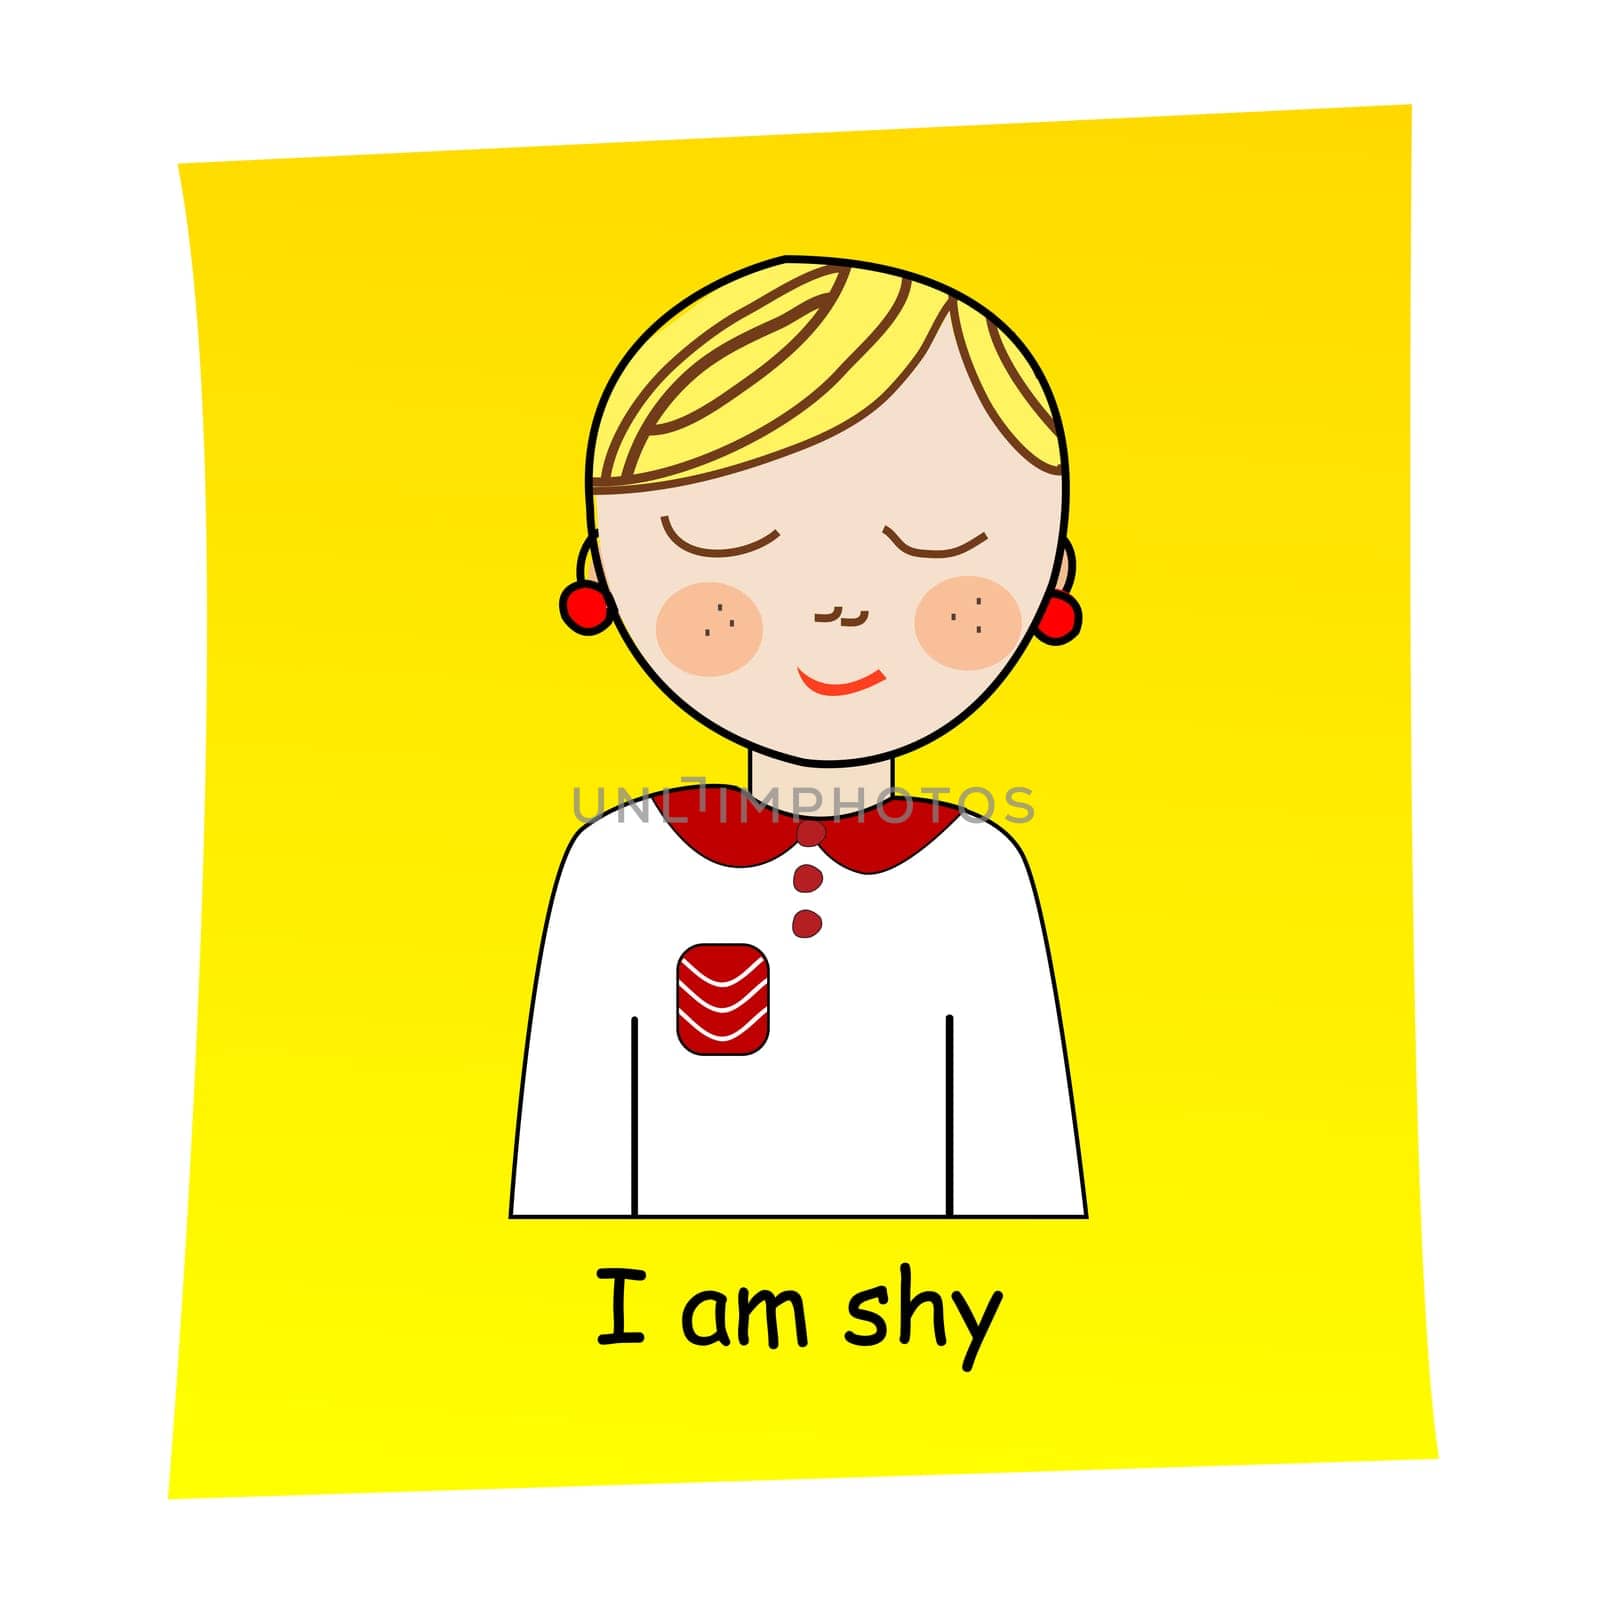 I am shy concept by hibrida13